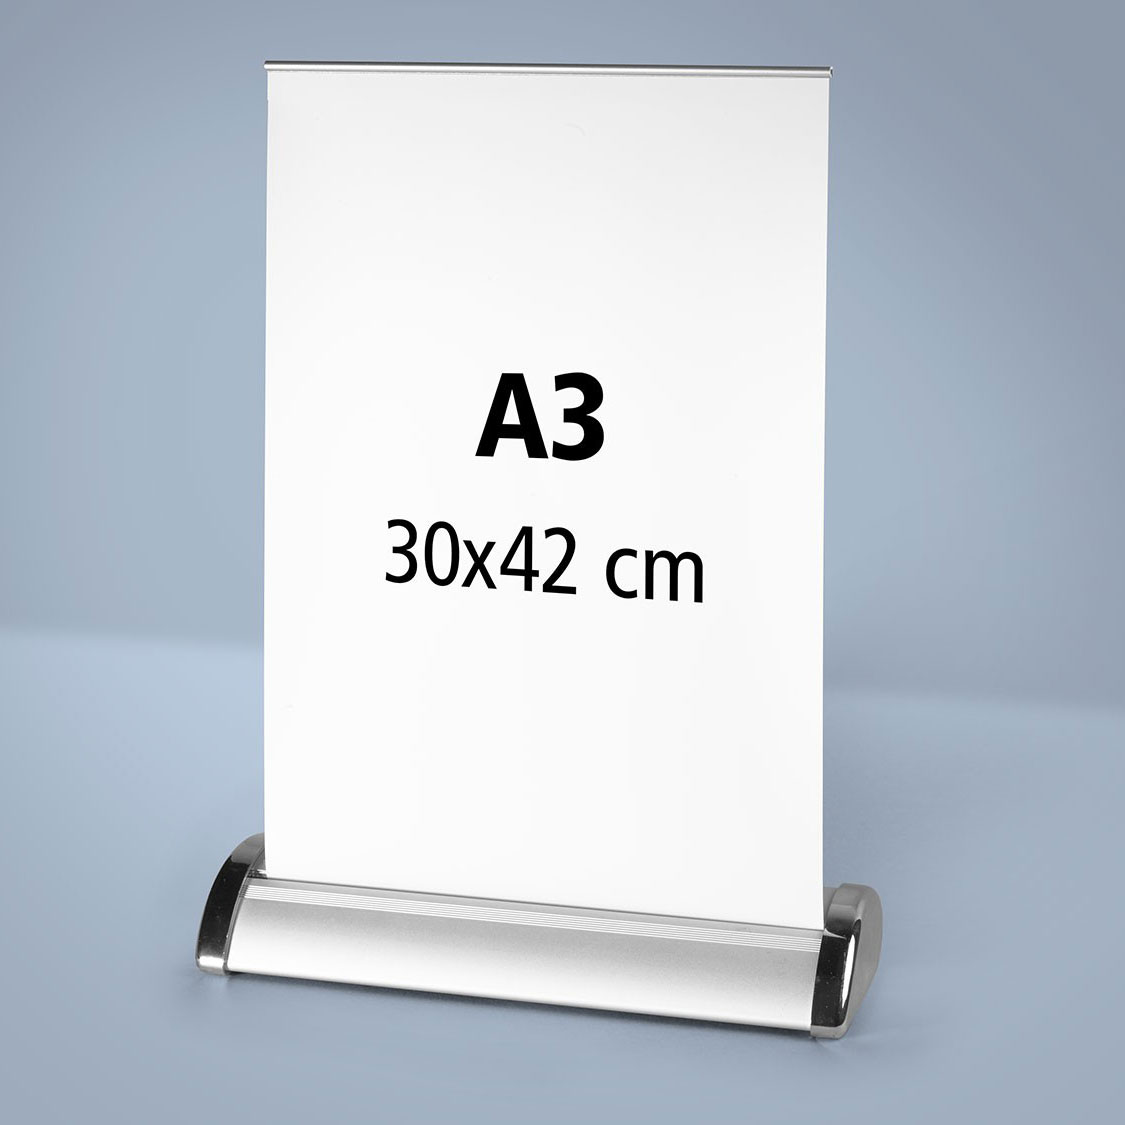 Un roll up publicitaire mini de comptoir format a3 29,7x42 cm imprimé et son affiche déroulée sur laquelle on peut lire A3 29,7x42 cm